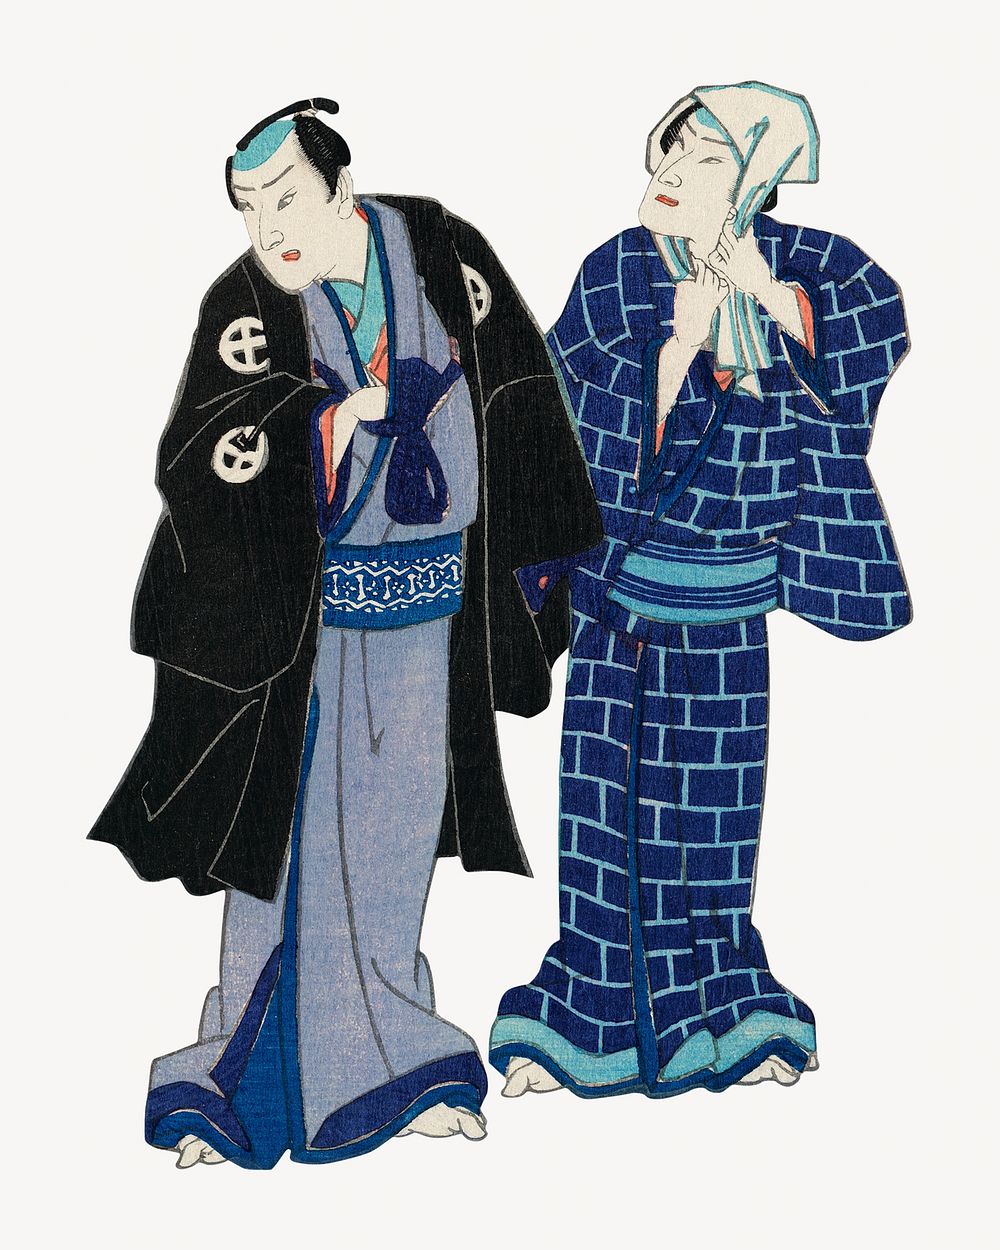 Chotto Hitokuchi Hauta no Ateburi, Japanese ukiyo-e style illustration.  Remixed by rawpixel.